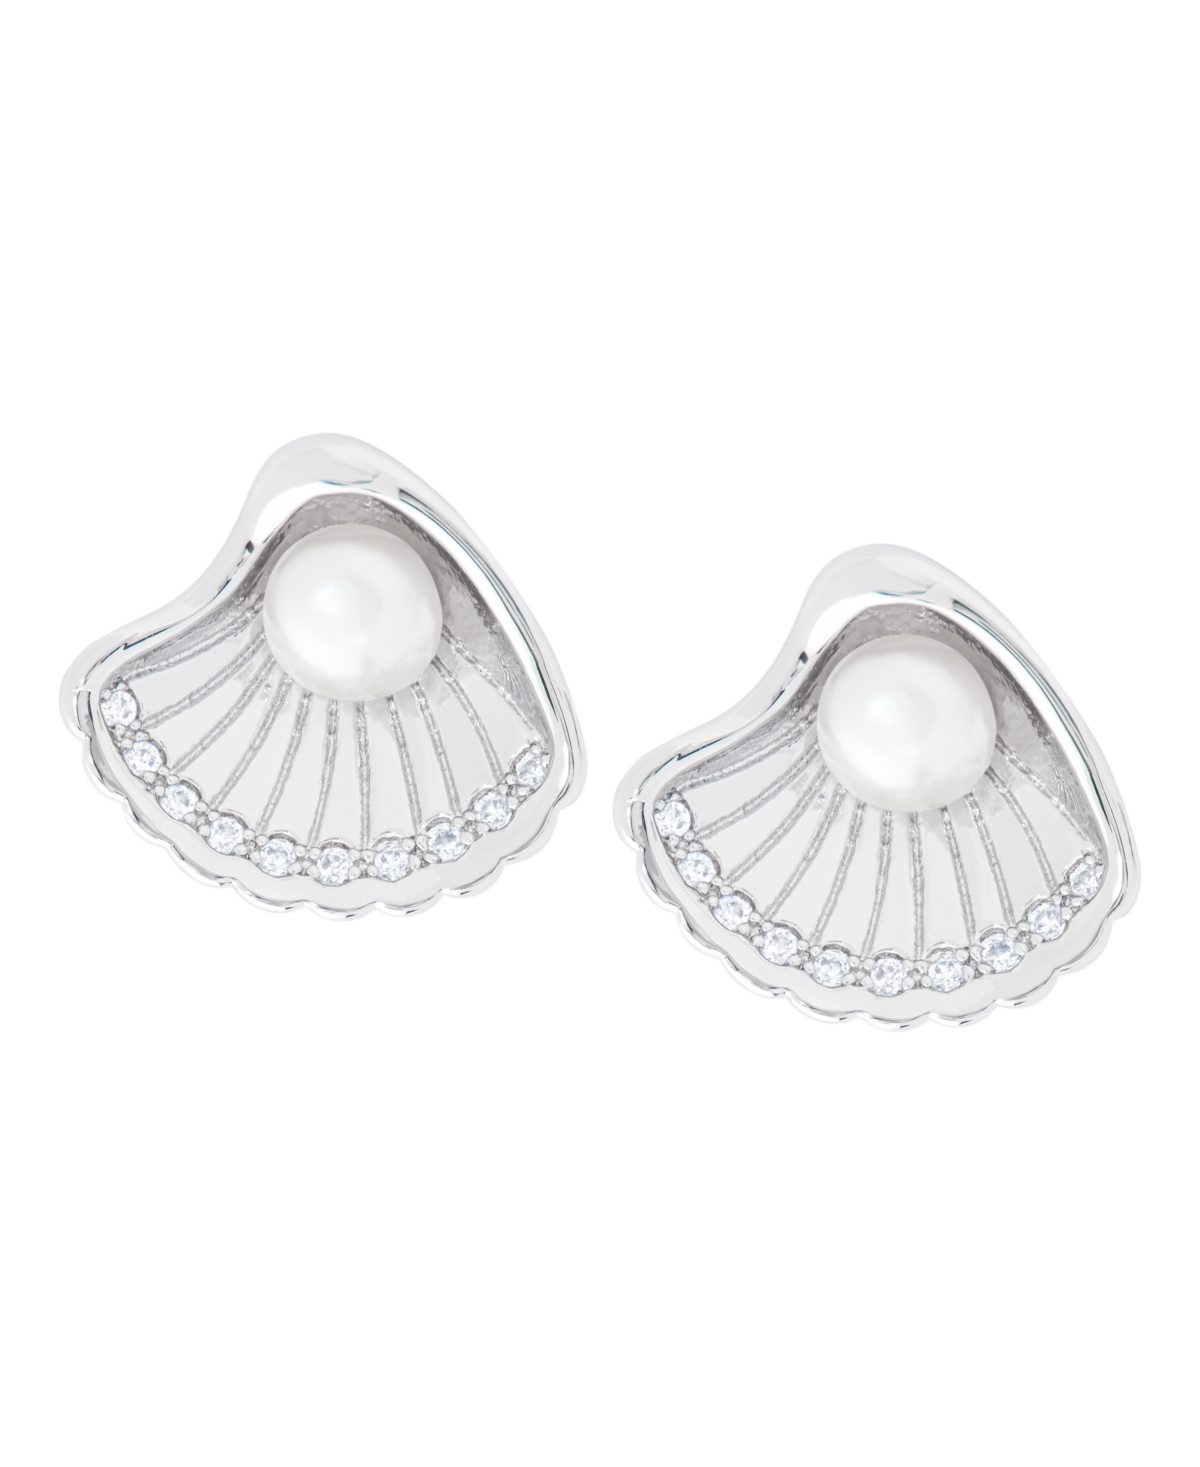 Macy's Women's Stud Earrings In Silver